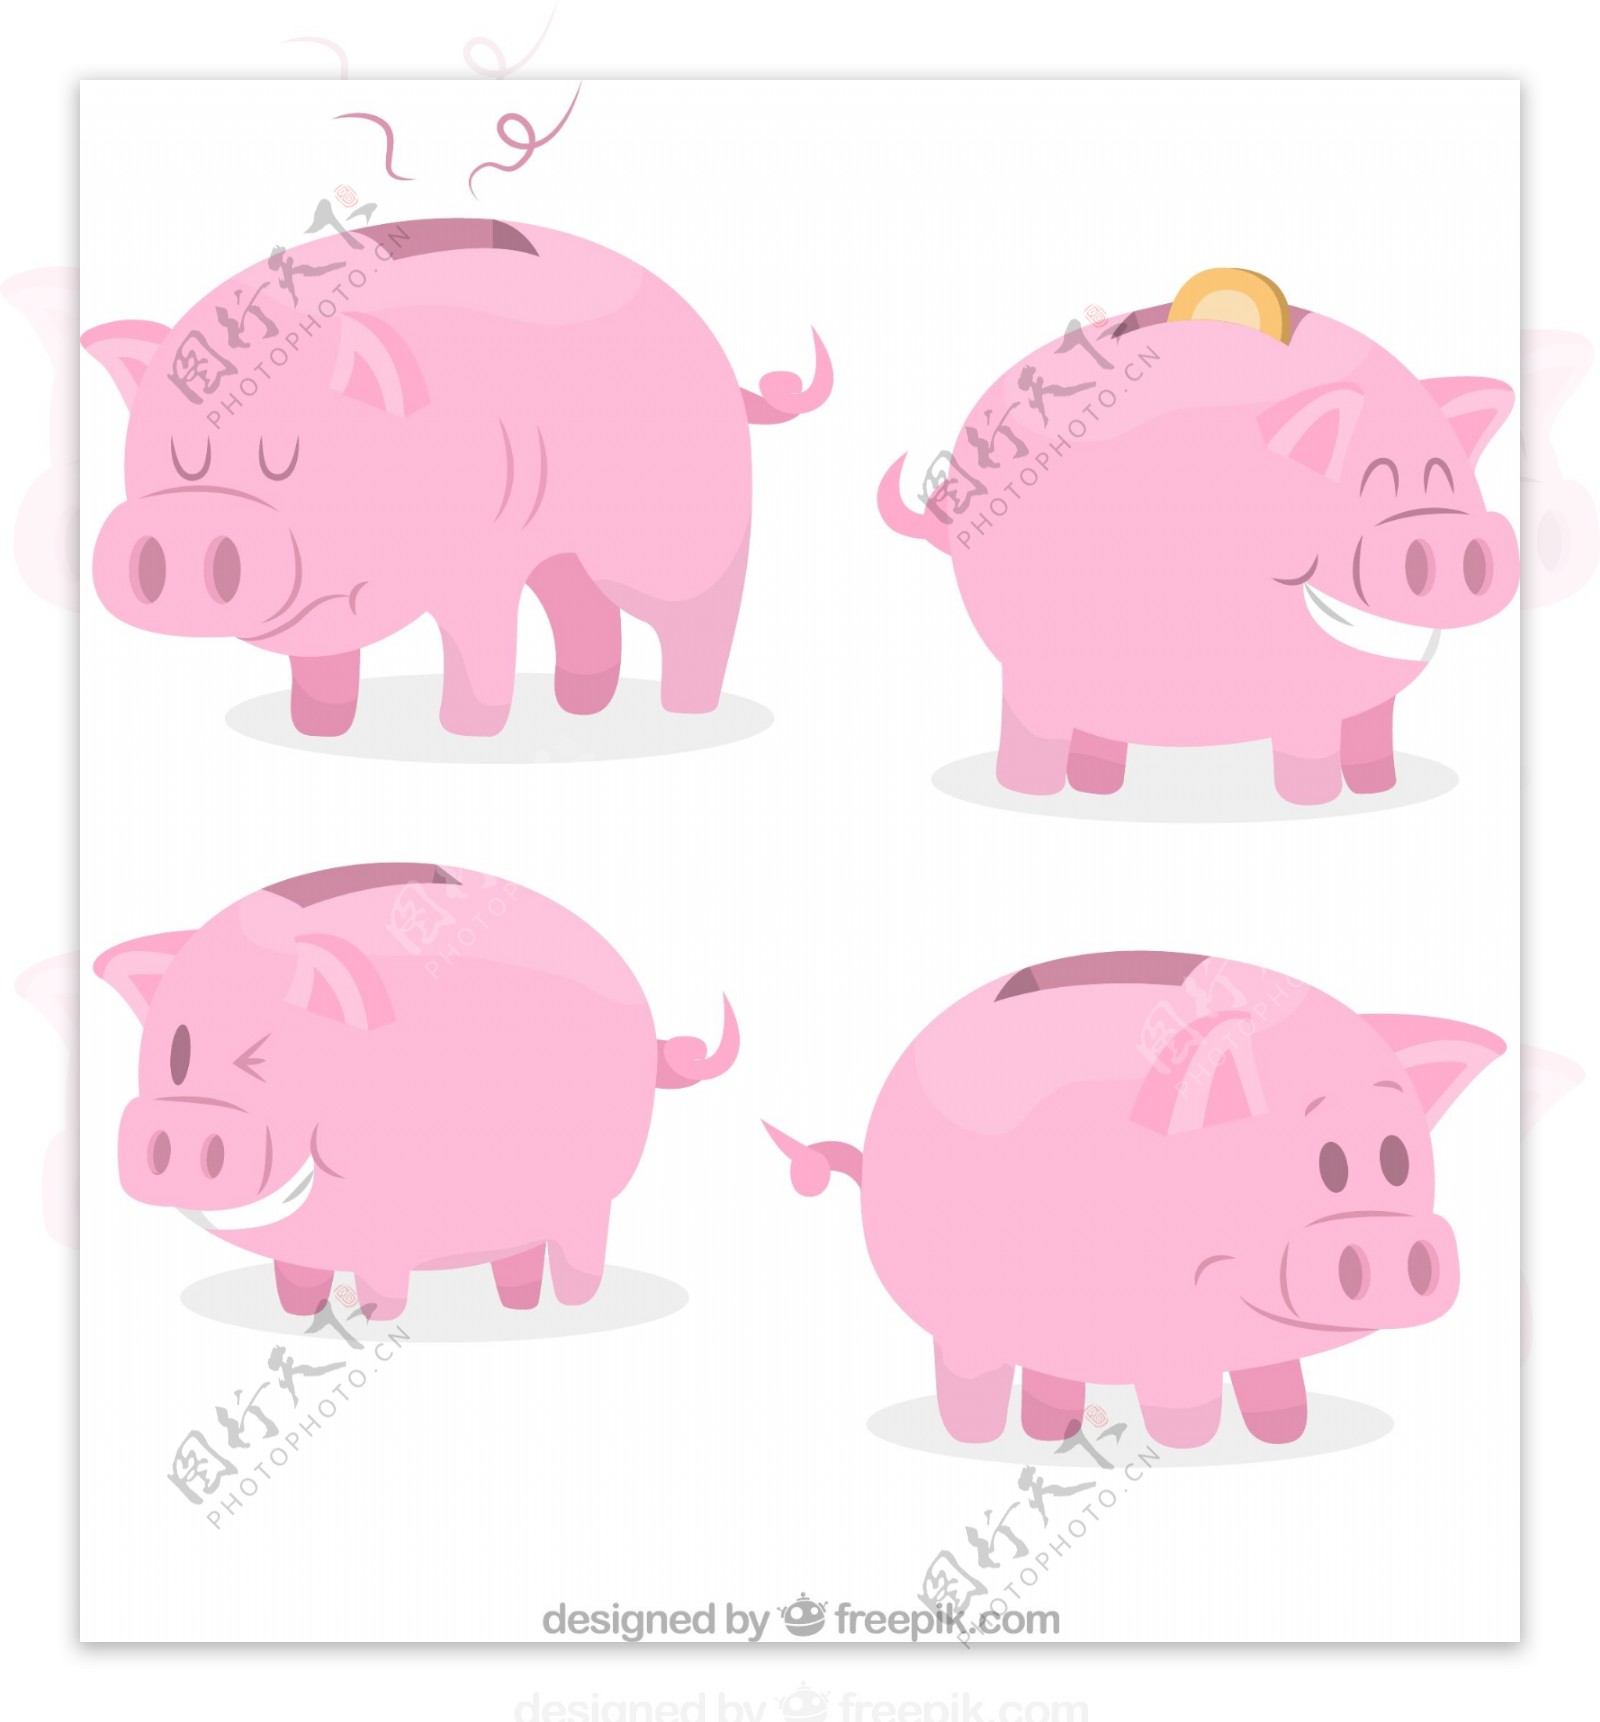 粉色猪存钱罐矢量素材